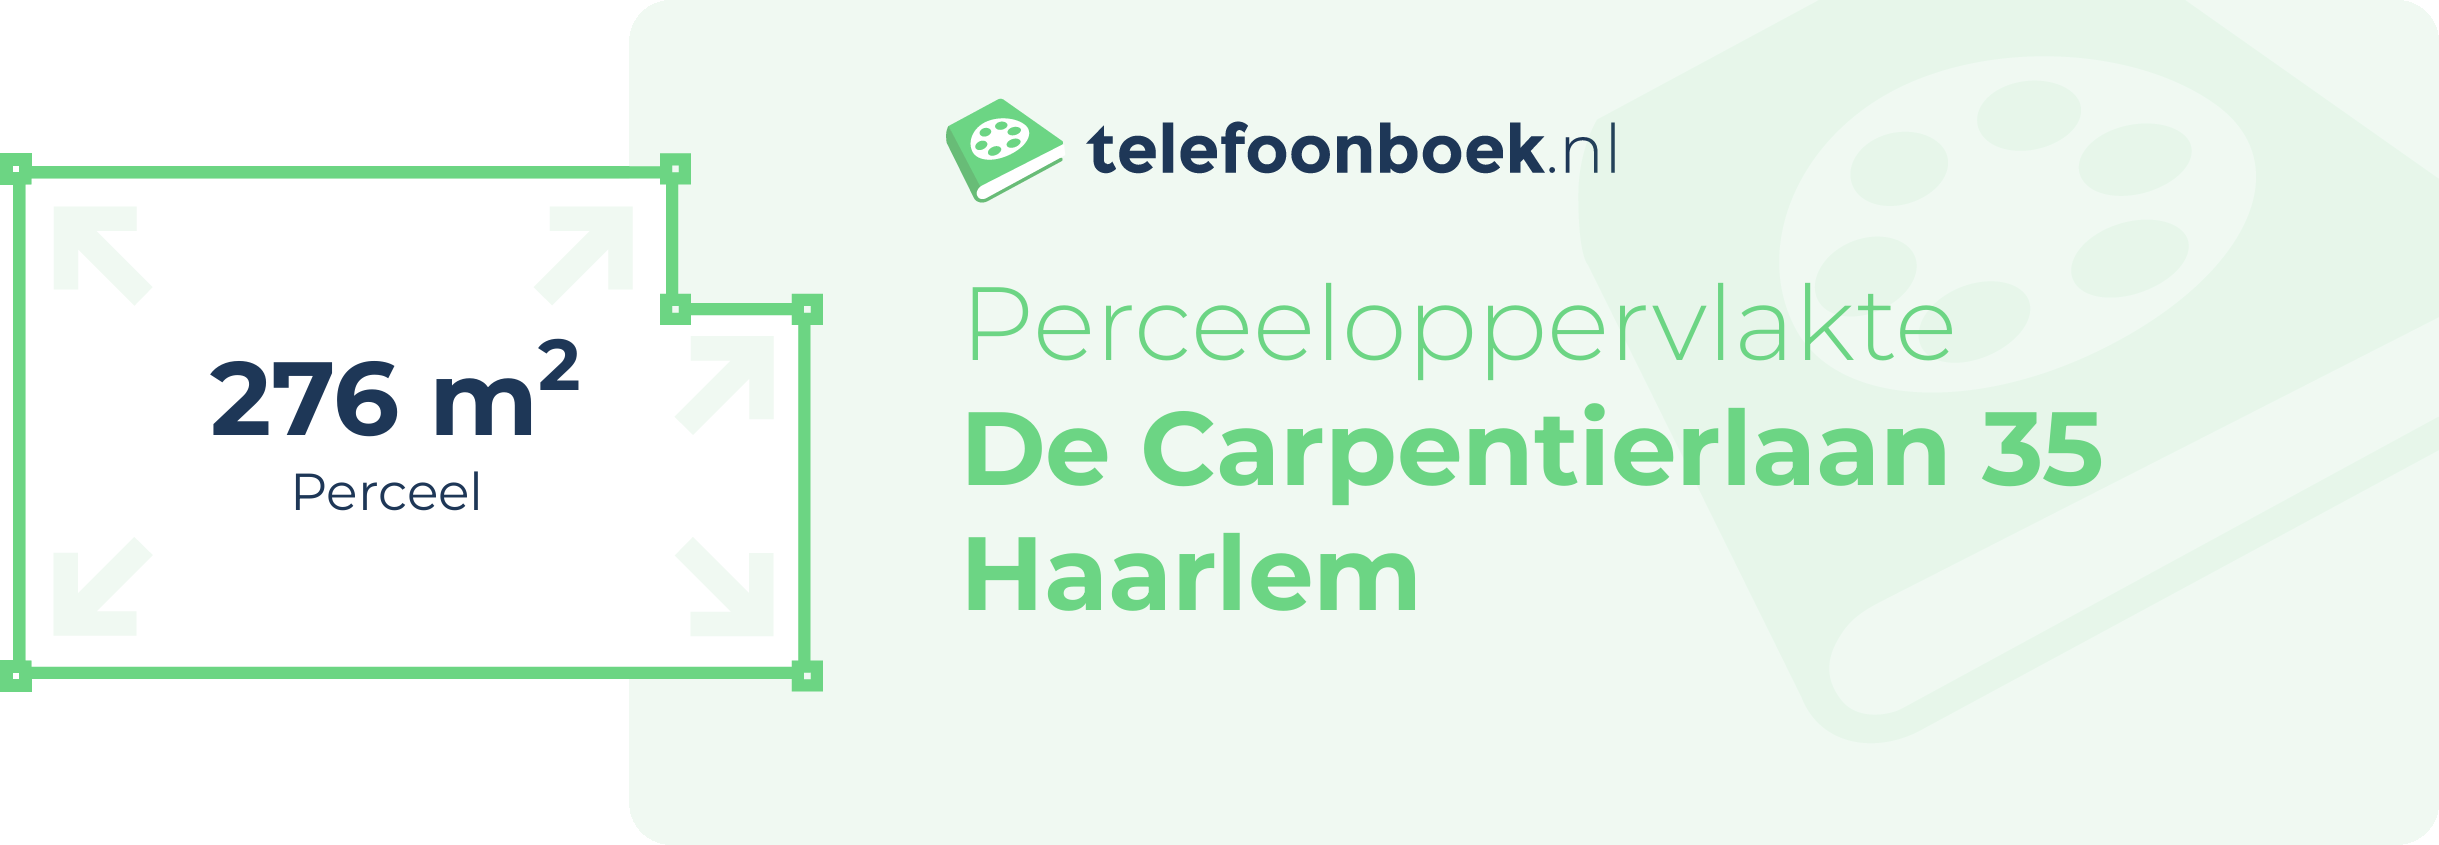 Perceeloppervlakte De Carpentierlaan 35 Haarlem